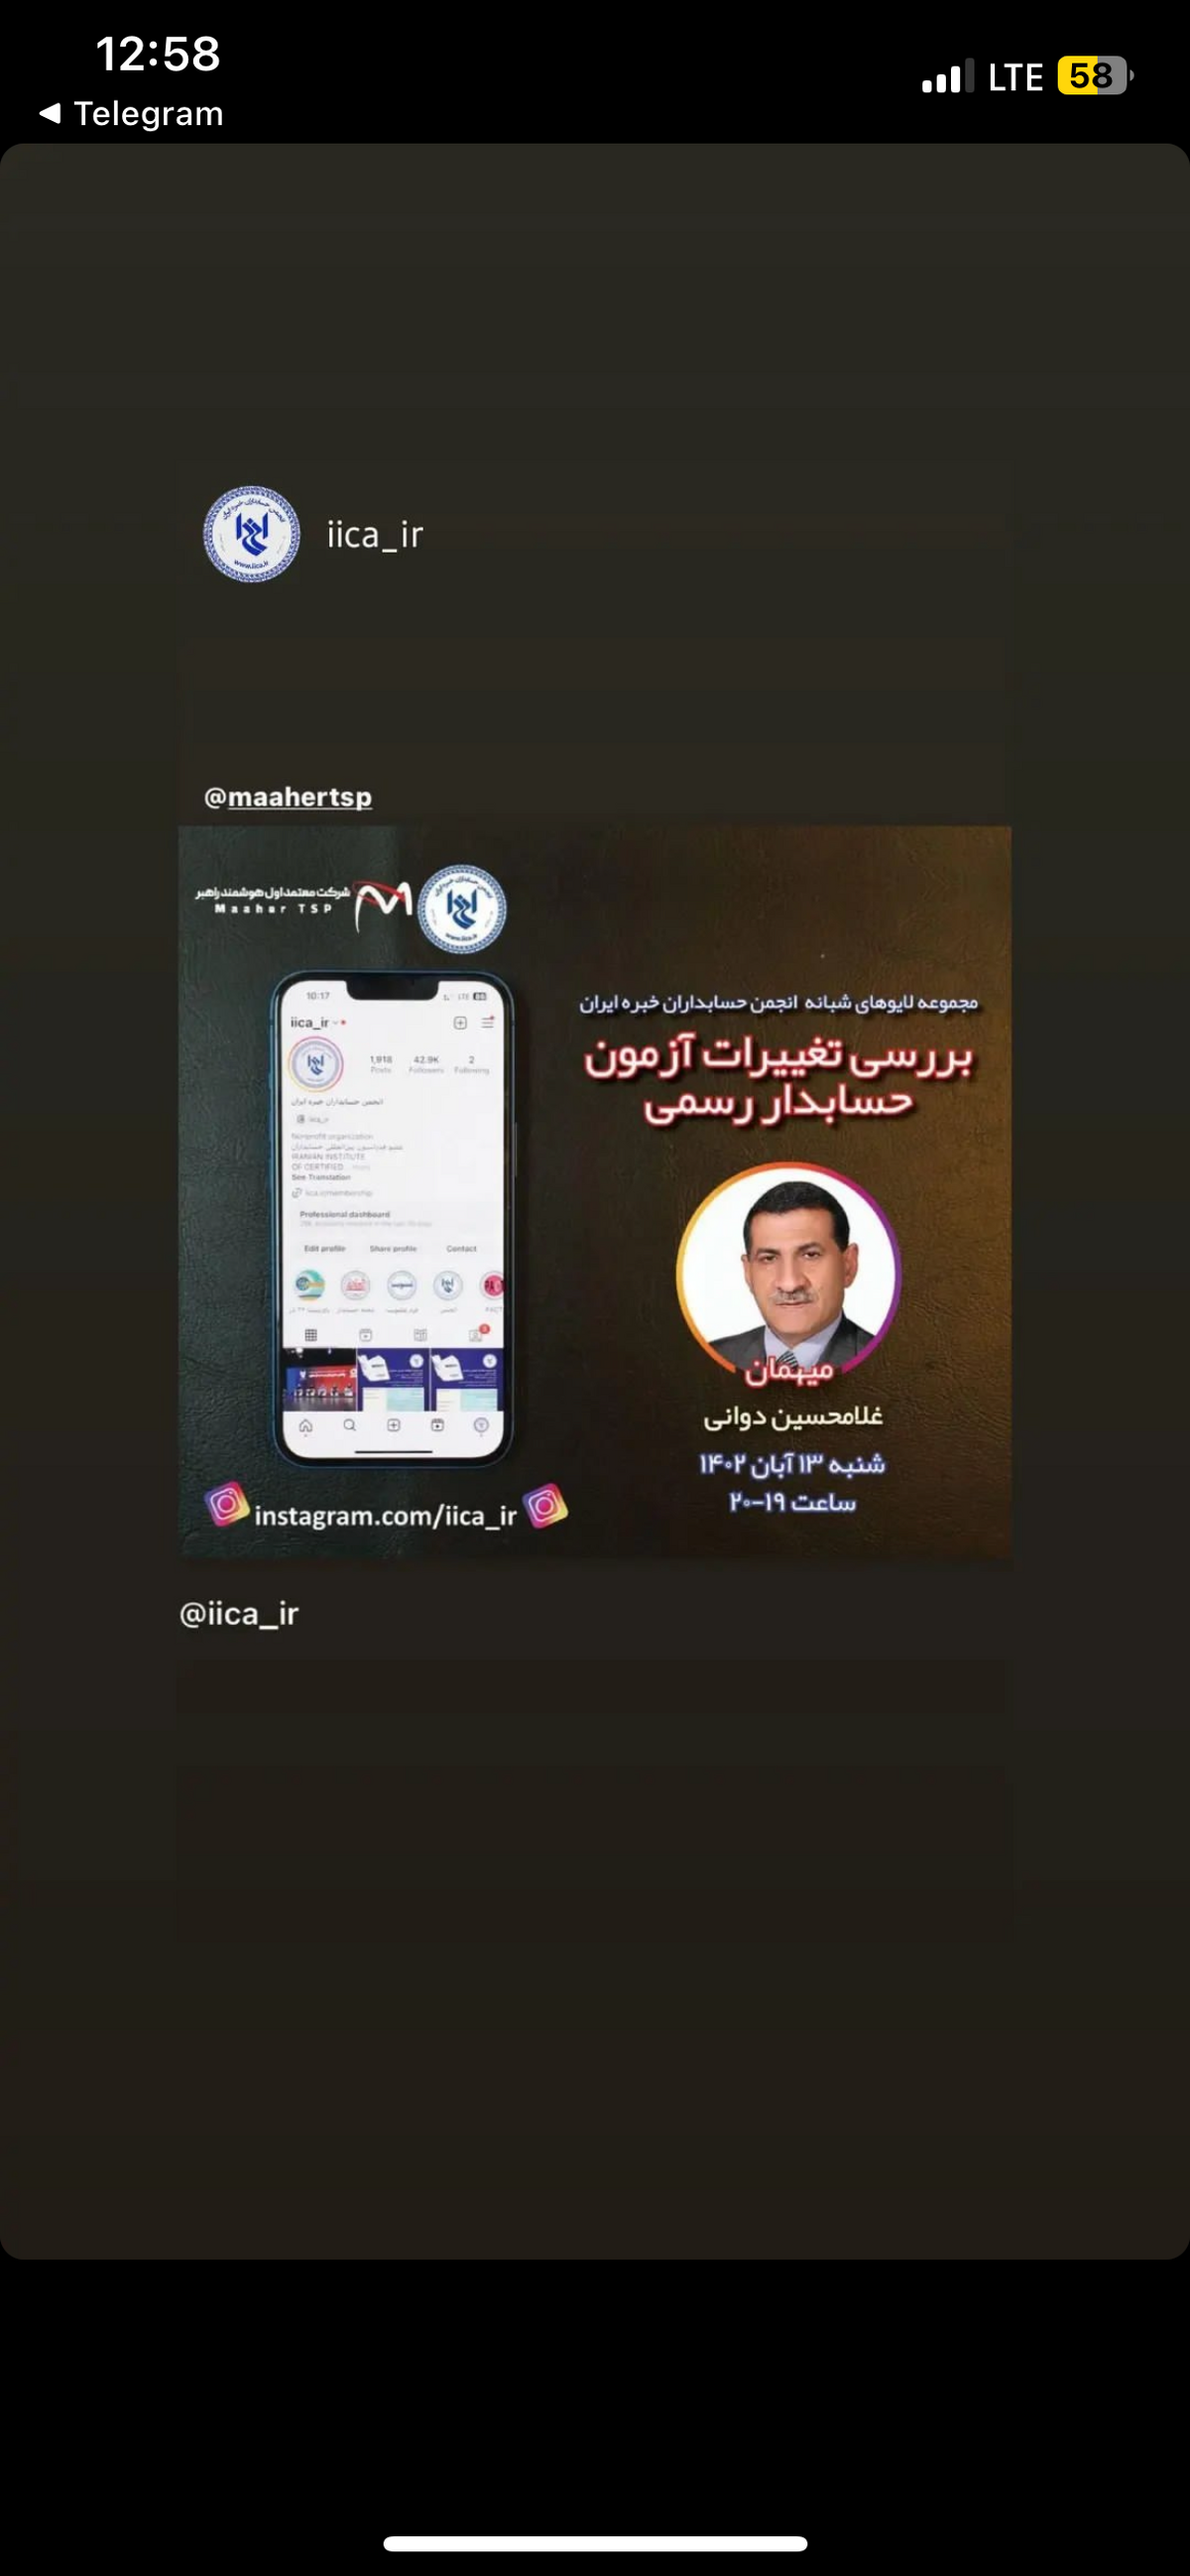 کانال اینستاگرامی غلامحسین دوانی در حوزه حسابداری و حسابرسی راه اندازی شد